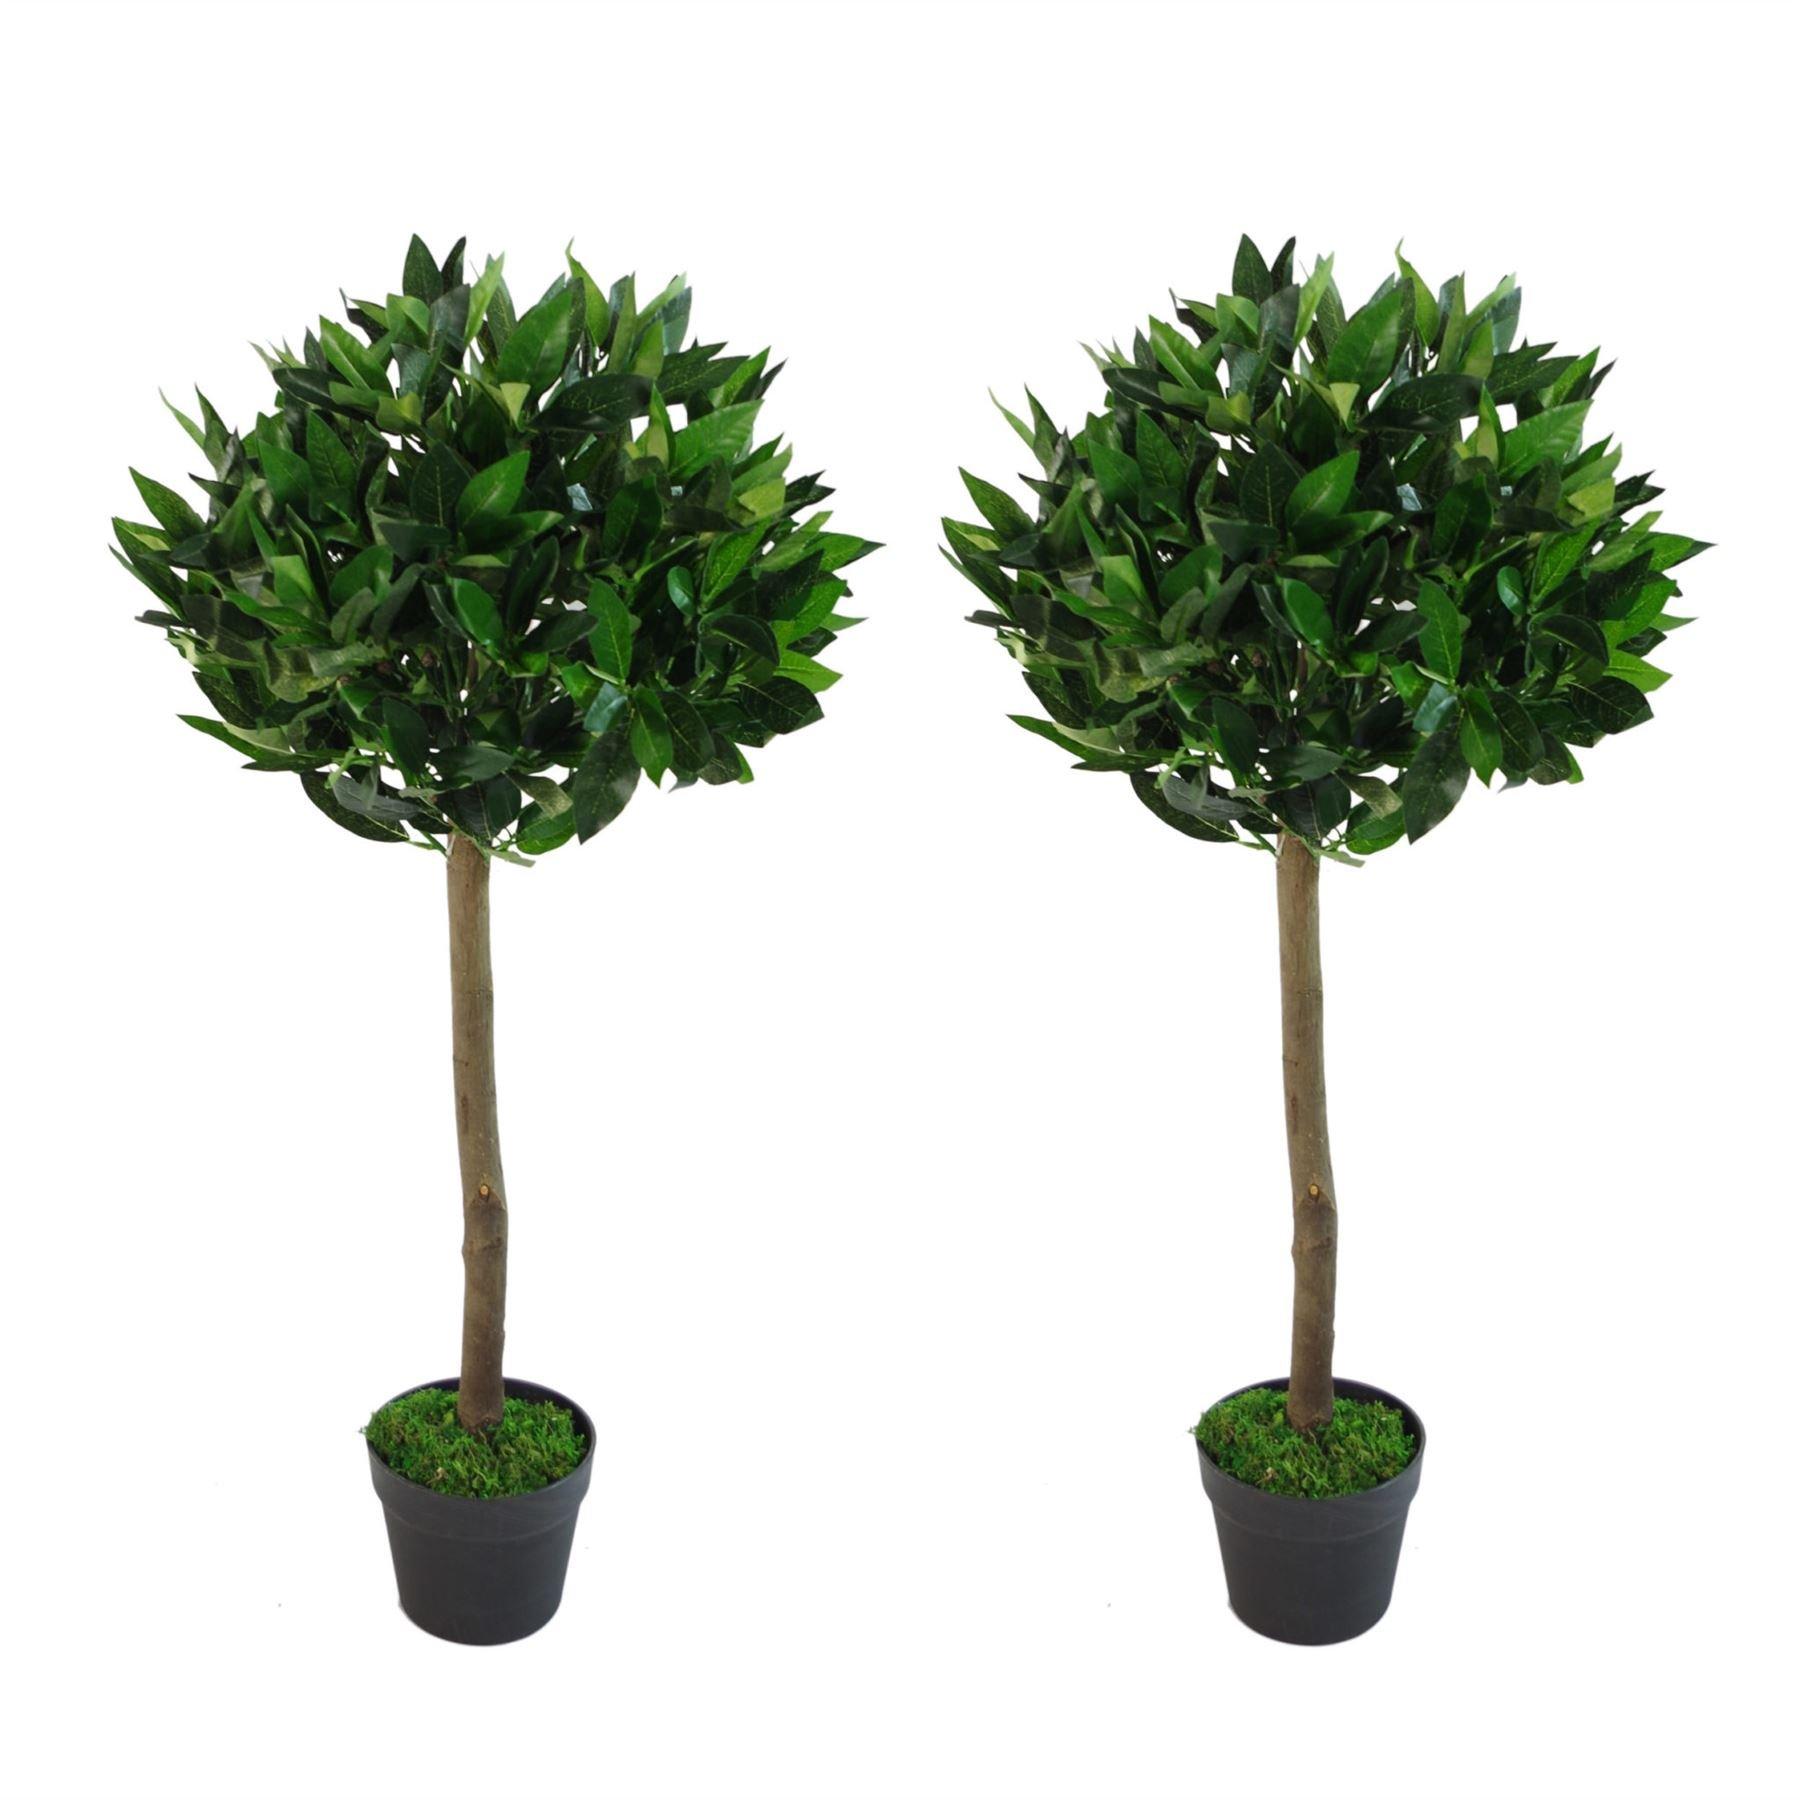 Pair of 90cm (3ft) Plain Stem Artificial Topiary Bay Laurel Ball Trees